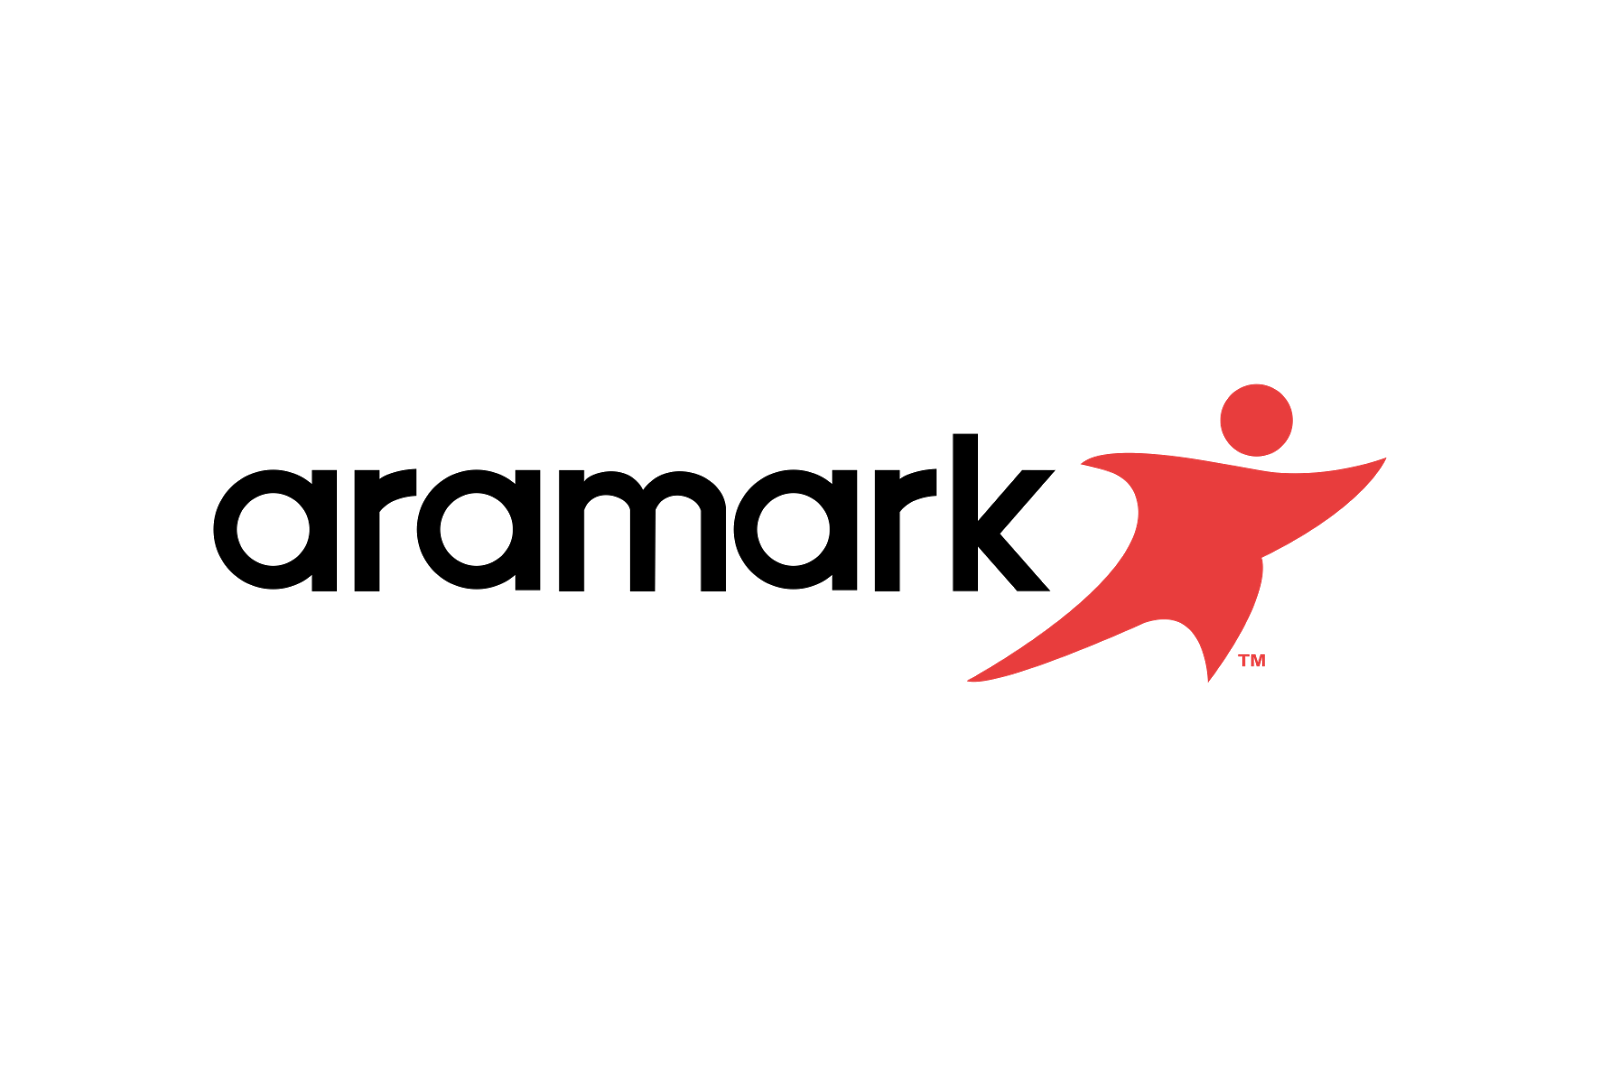 HubSpot logo vector